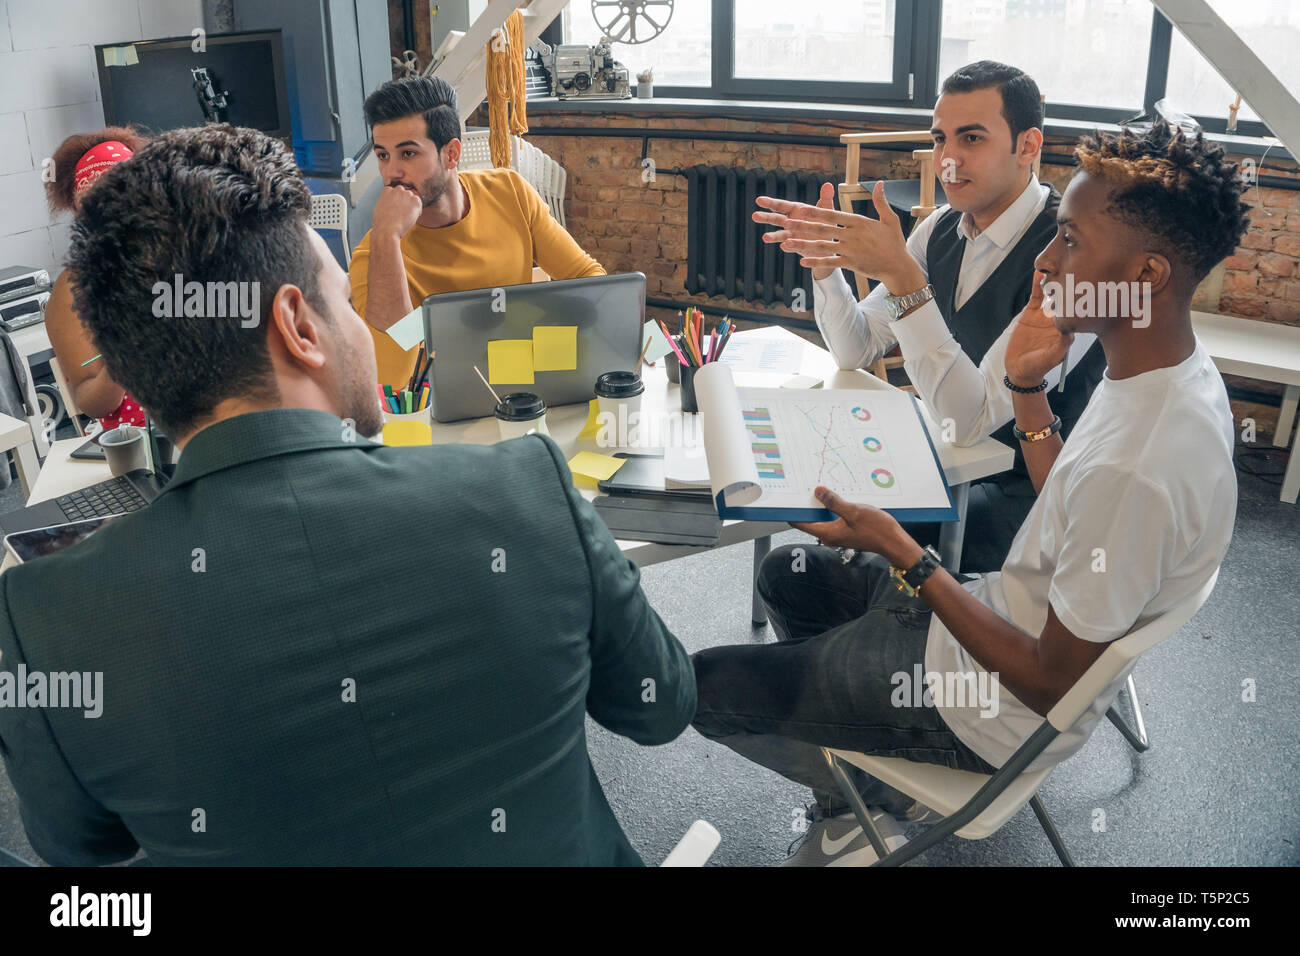 Live Kommunikation in einer Gruppe von jungen Leuten im Büro. Sitzung viel versprechende Unternehmer im Büro mit modernem Design. Stockfoto